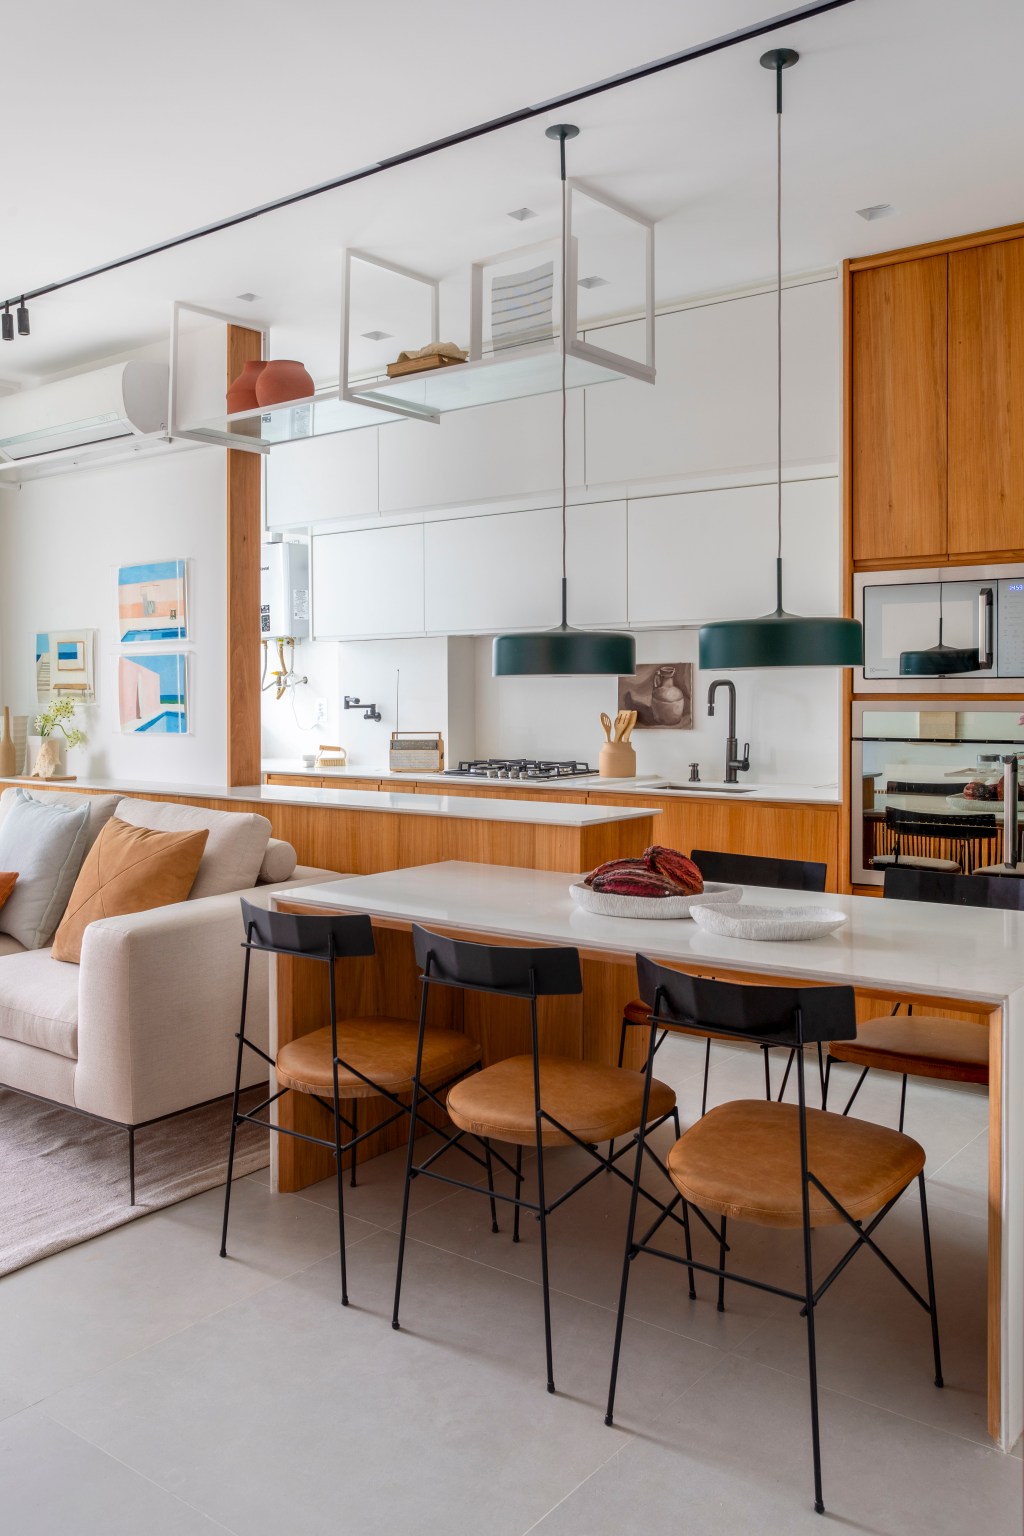 Branco e madeira criam décor cozy em apartamento de 70 m². Projeto de Rafael Ramos. Na foto, cozinha com bancada branca e de madeira.